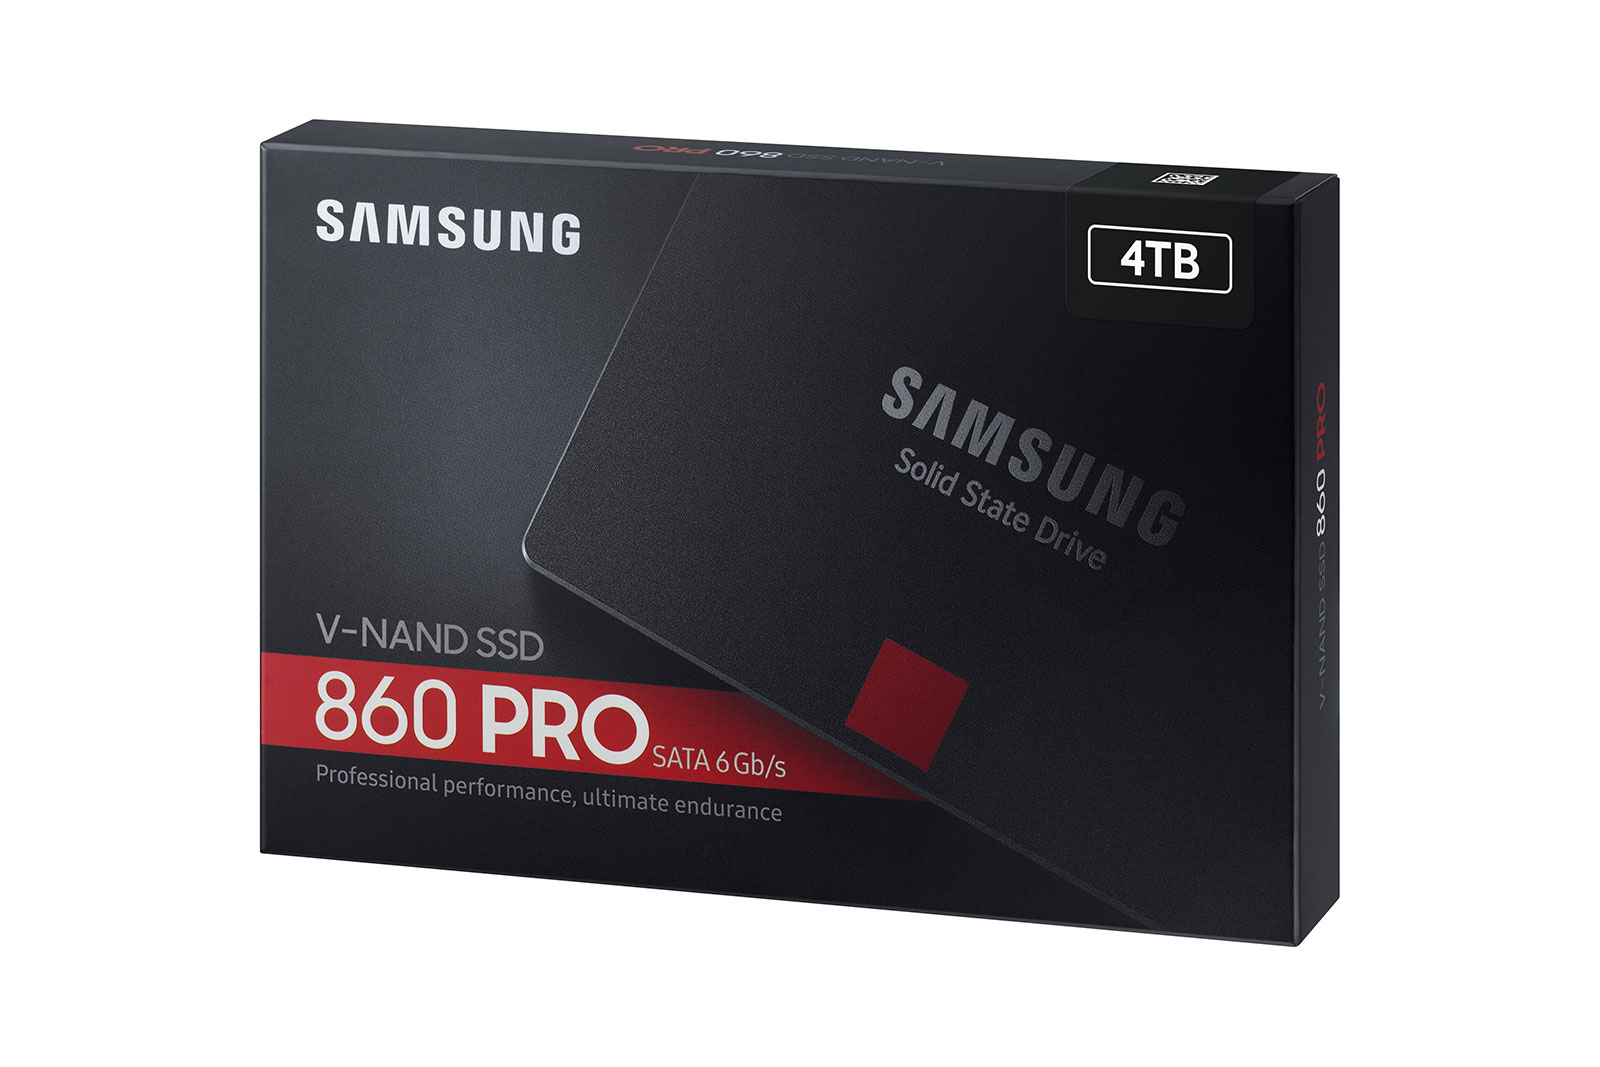 SSD 860 PRO 2.5" SATA III 4TB & Storage MZ-76P4T0BW | Samsung